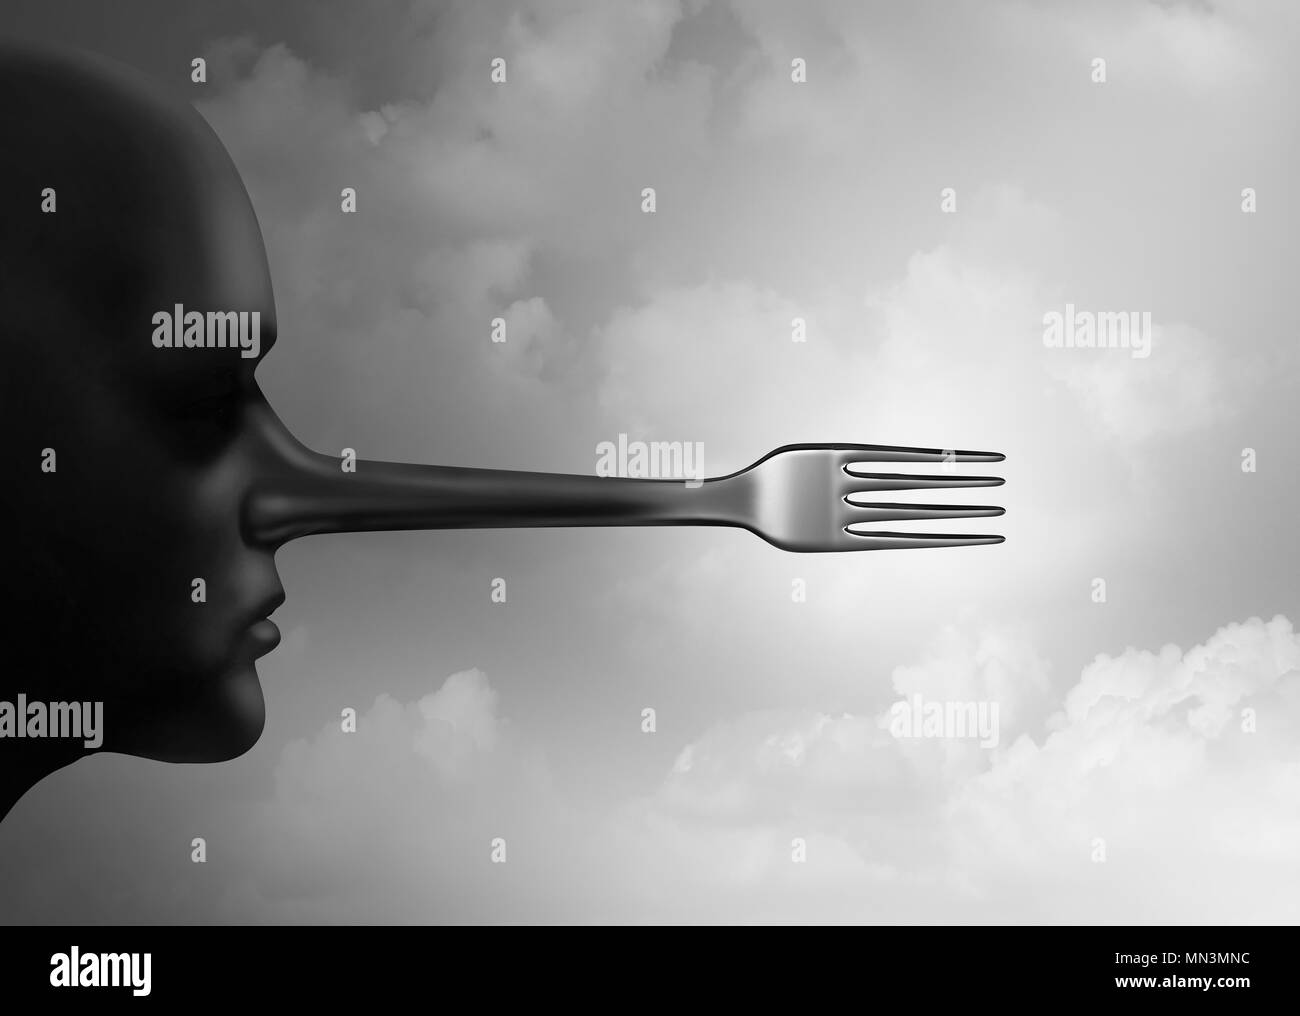 Essen betrug Konzept und gefälschte Lebensmittel oder gefälschte Mahlzeit, da eine Platte mit betrügerischen Zutaten als Restaurant Branche Kriminelle als 3D-Darstellung. Stockfoto